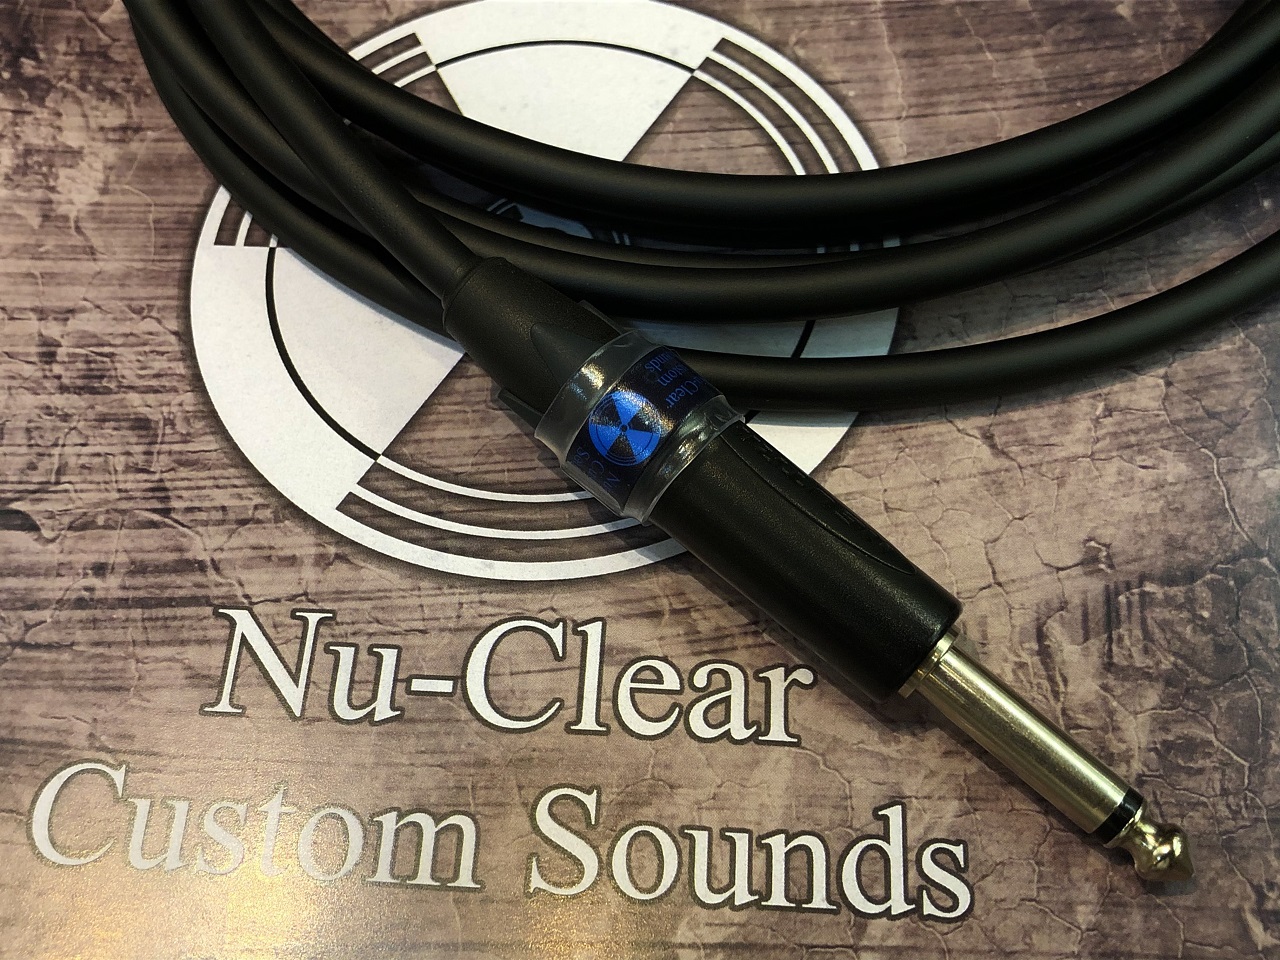 お取り寄せ商品 Nu-Clear Custom Sounds メーカー公式 XC01 QUANTUM 4.0mSL 23:59まで ポイント5倍 11 イーグルス感謝祭 2021 本日限定 26